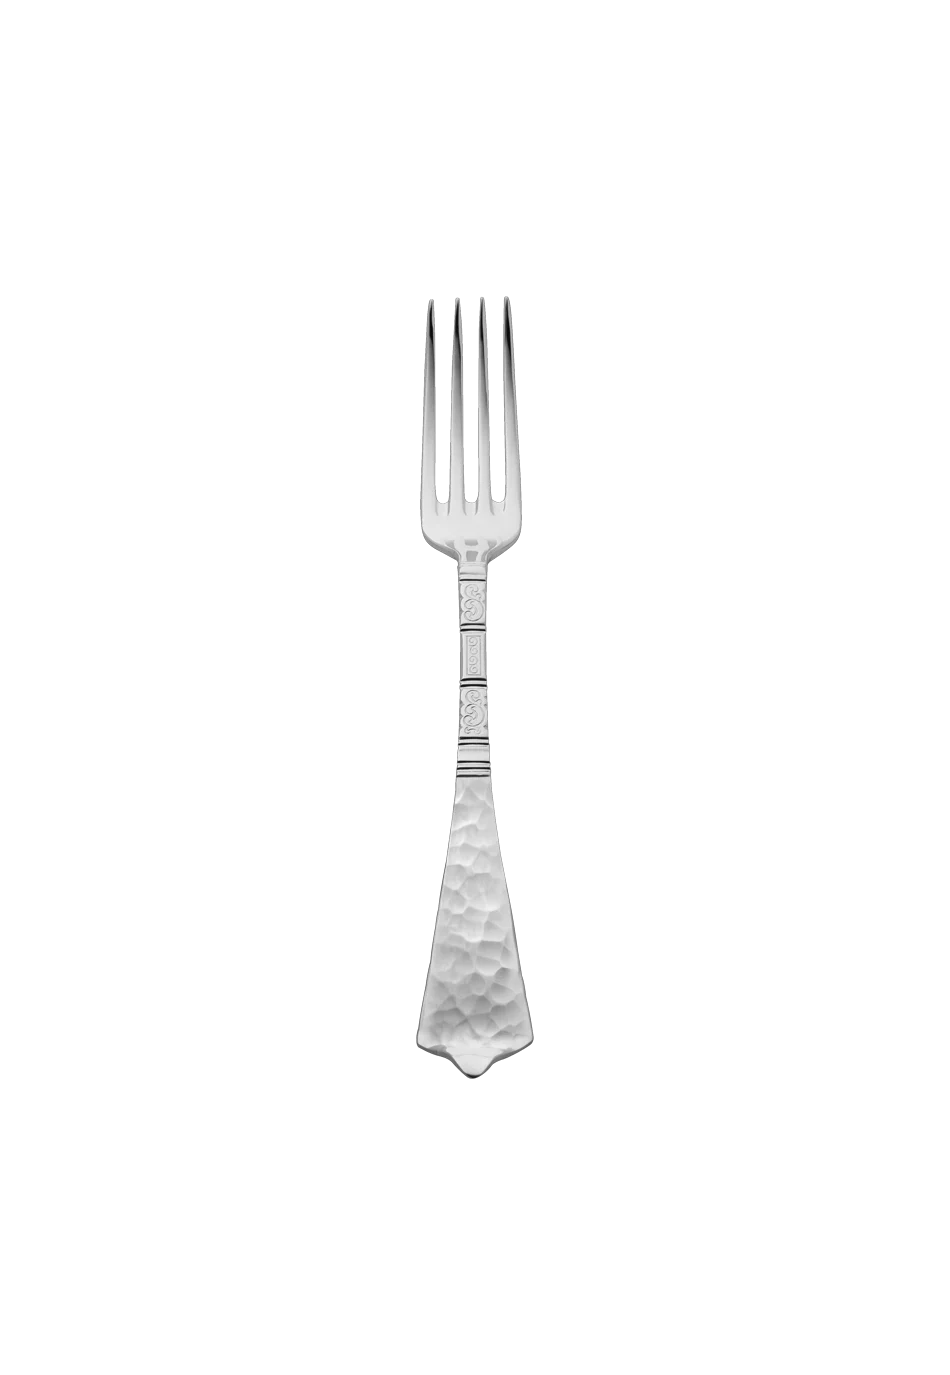 Hermitage Dessert Fork (150g massive silverplated)